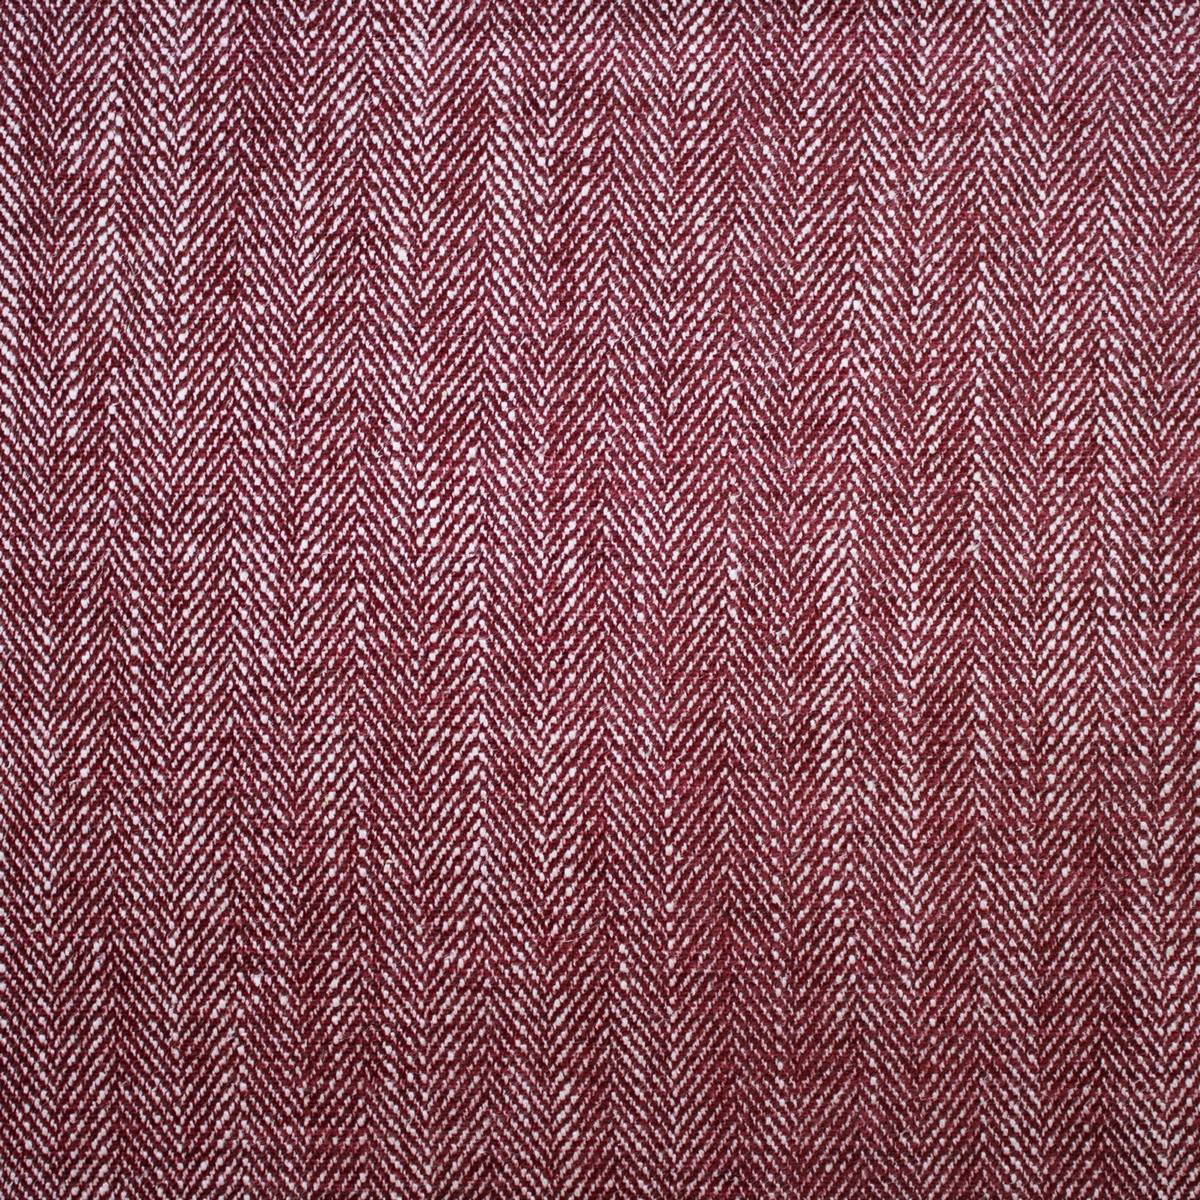 Morgan Strawberry Fabric by Ashley Wilde